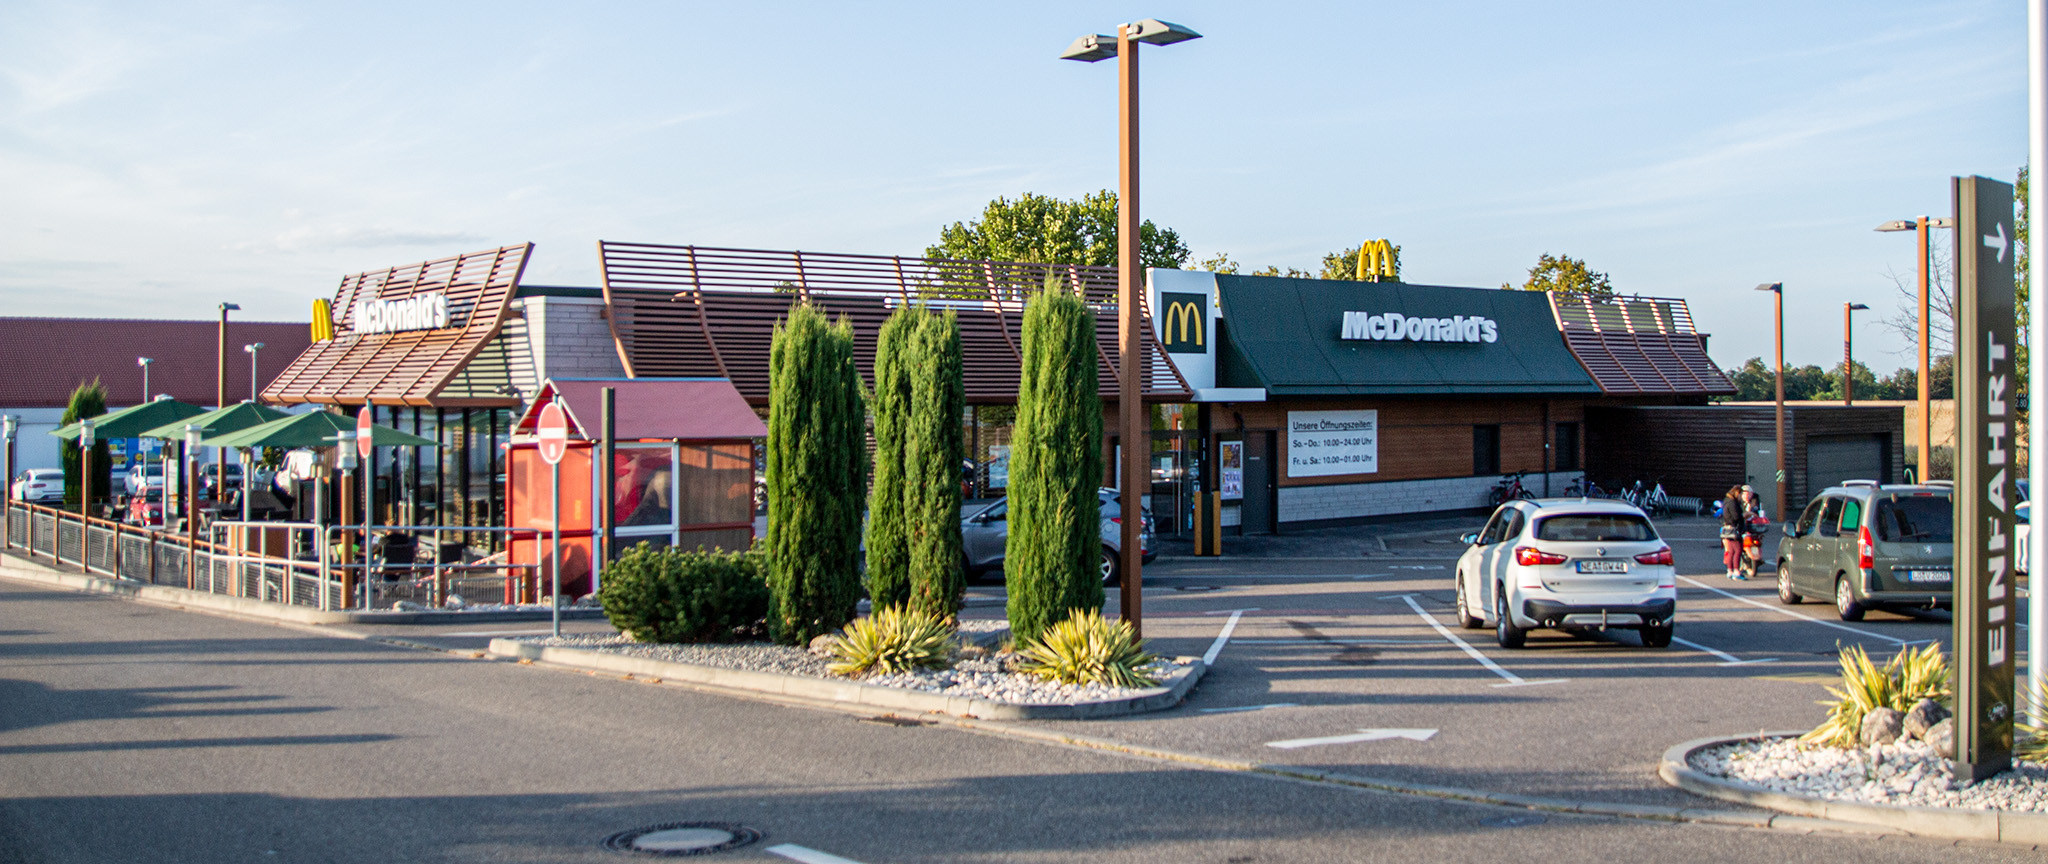 Das McDonald’s-Restaurant in Bad Krozingen